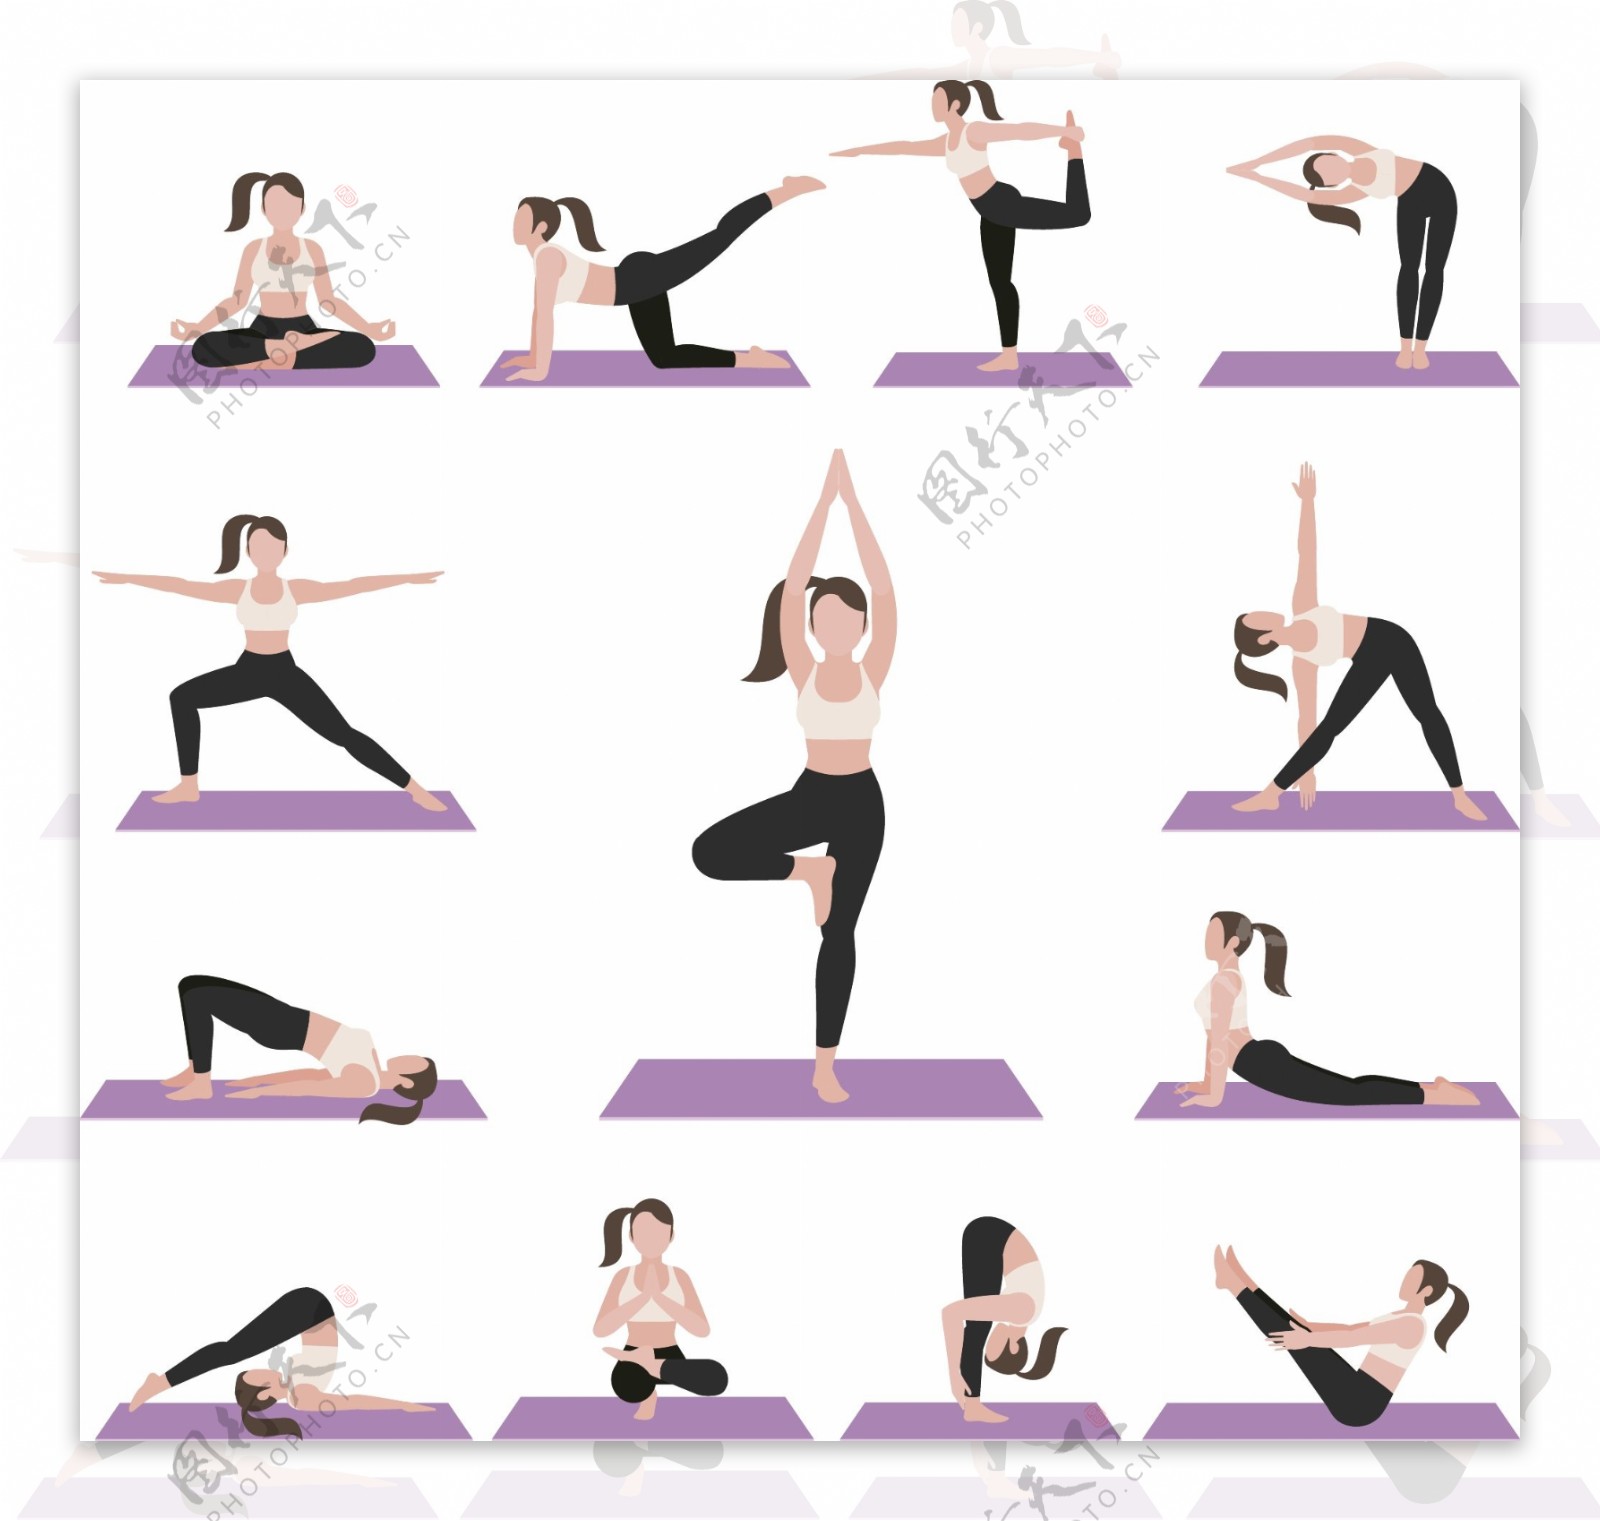 女性瑜珈运动矢量素材